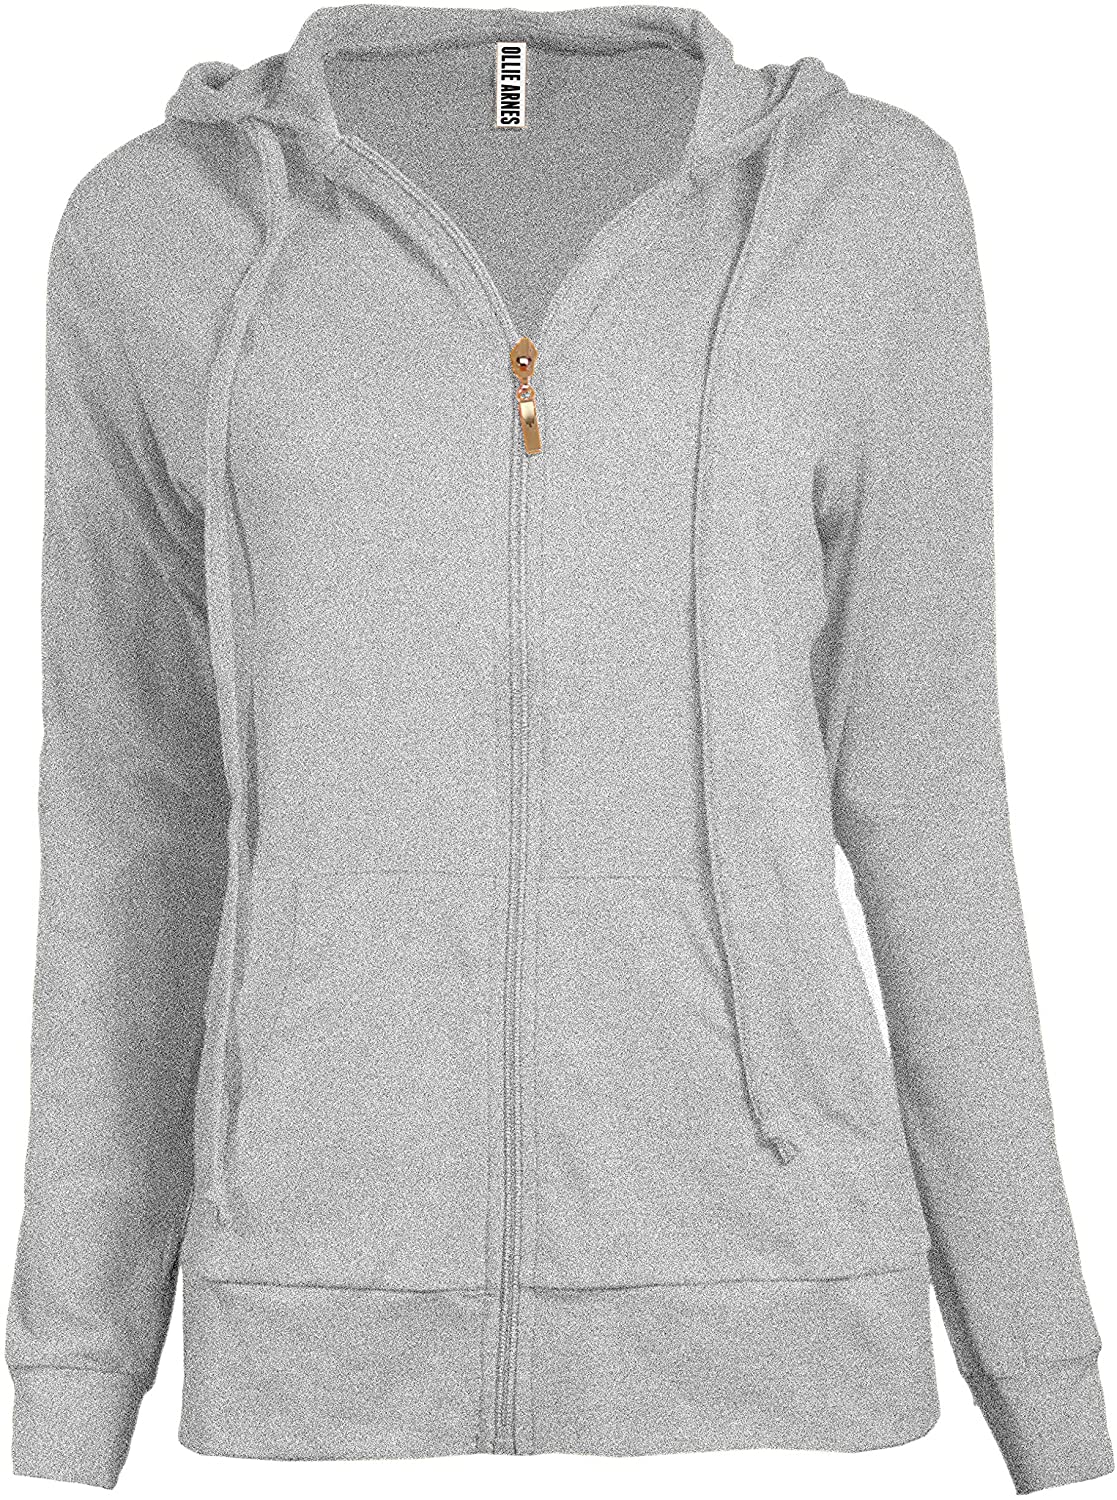 thumbnail 13  - OLLIE ARNES Women&#039;s Thermal Long Hoodie Zip Up Jacket Sweater Tops